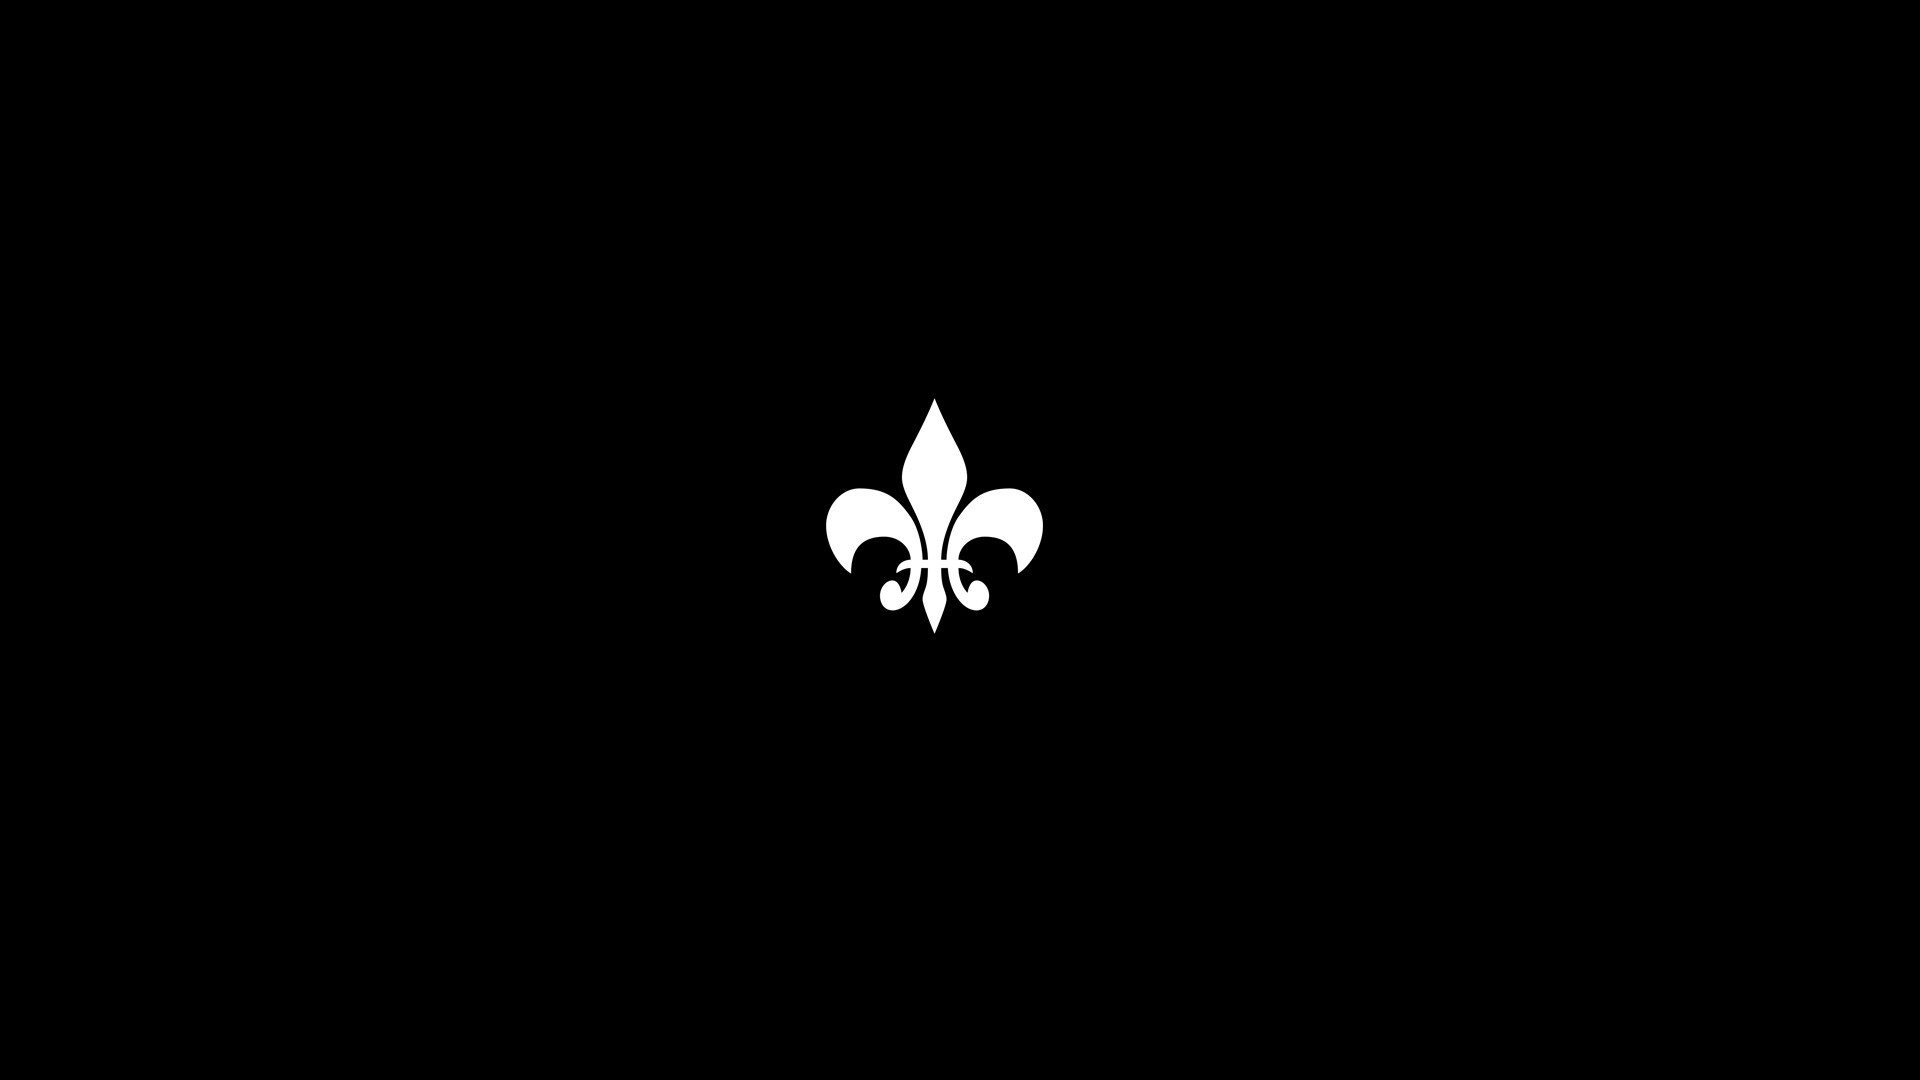 1920x1080 General  minimalism video games Saints Row Fleur de Lis black  background